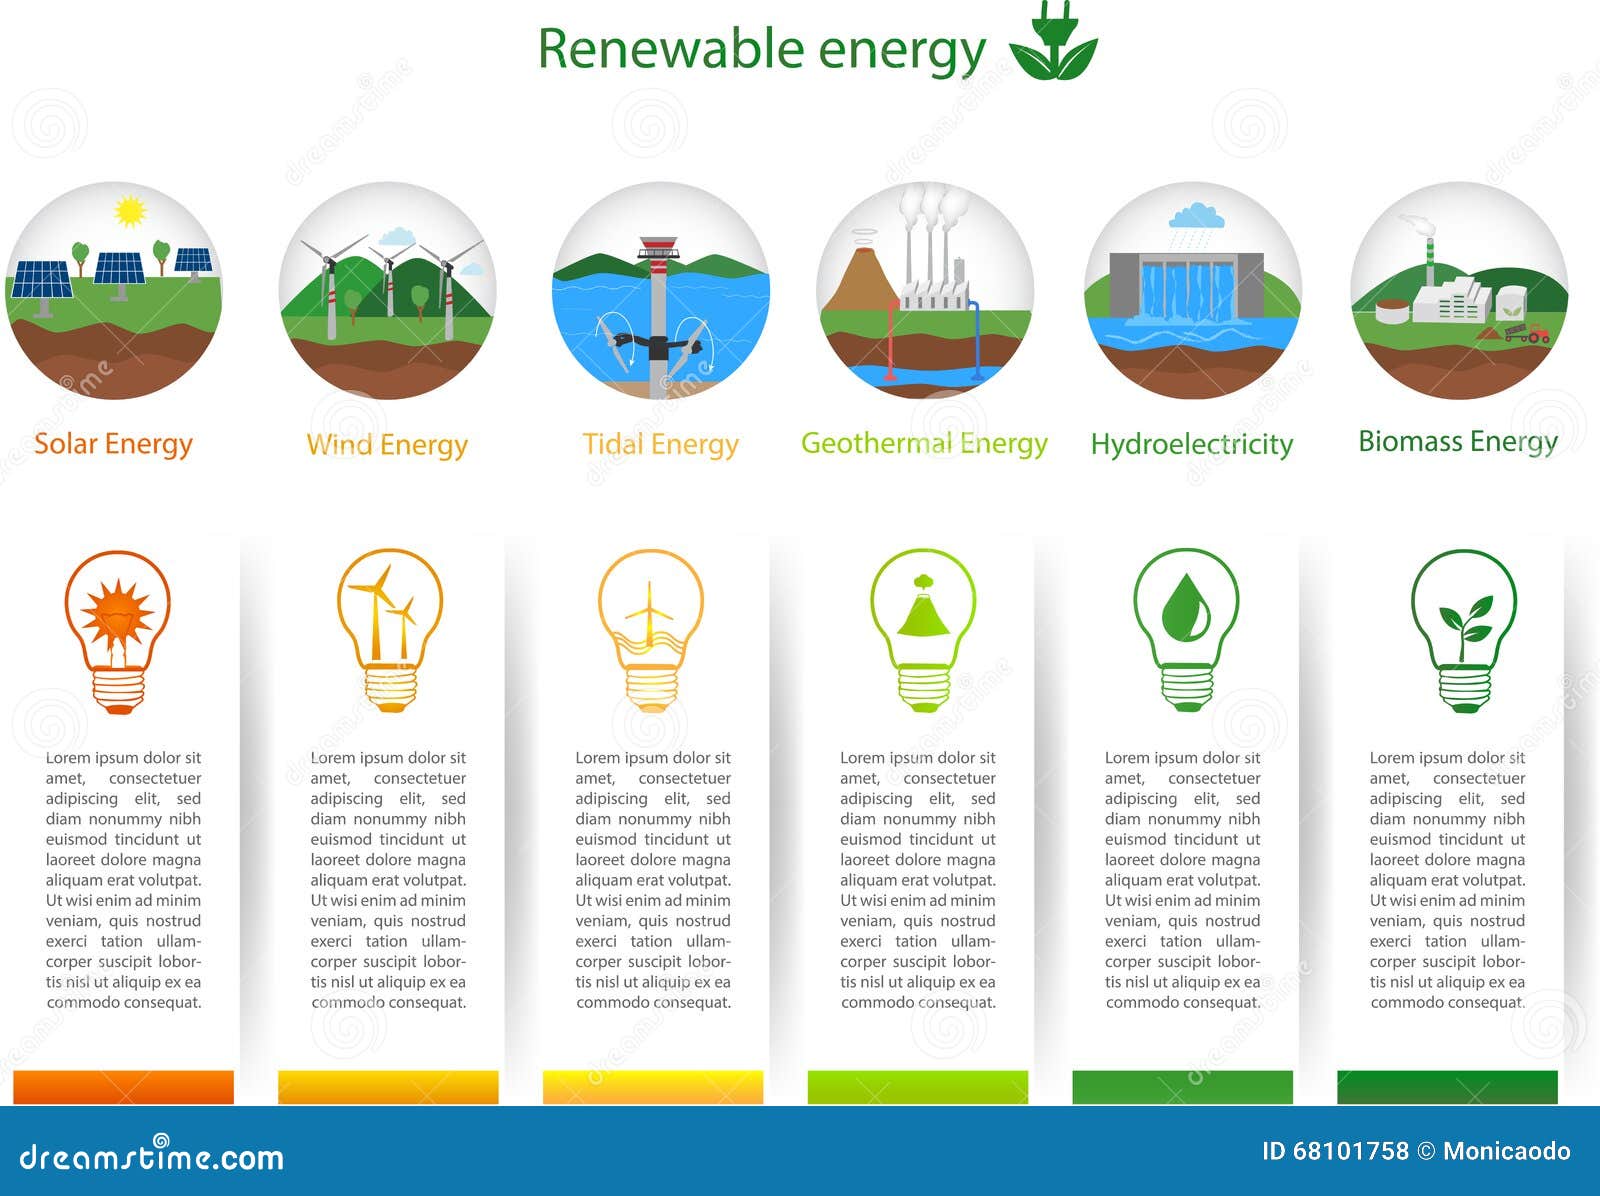 renewable energy types